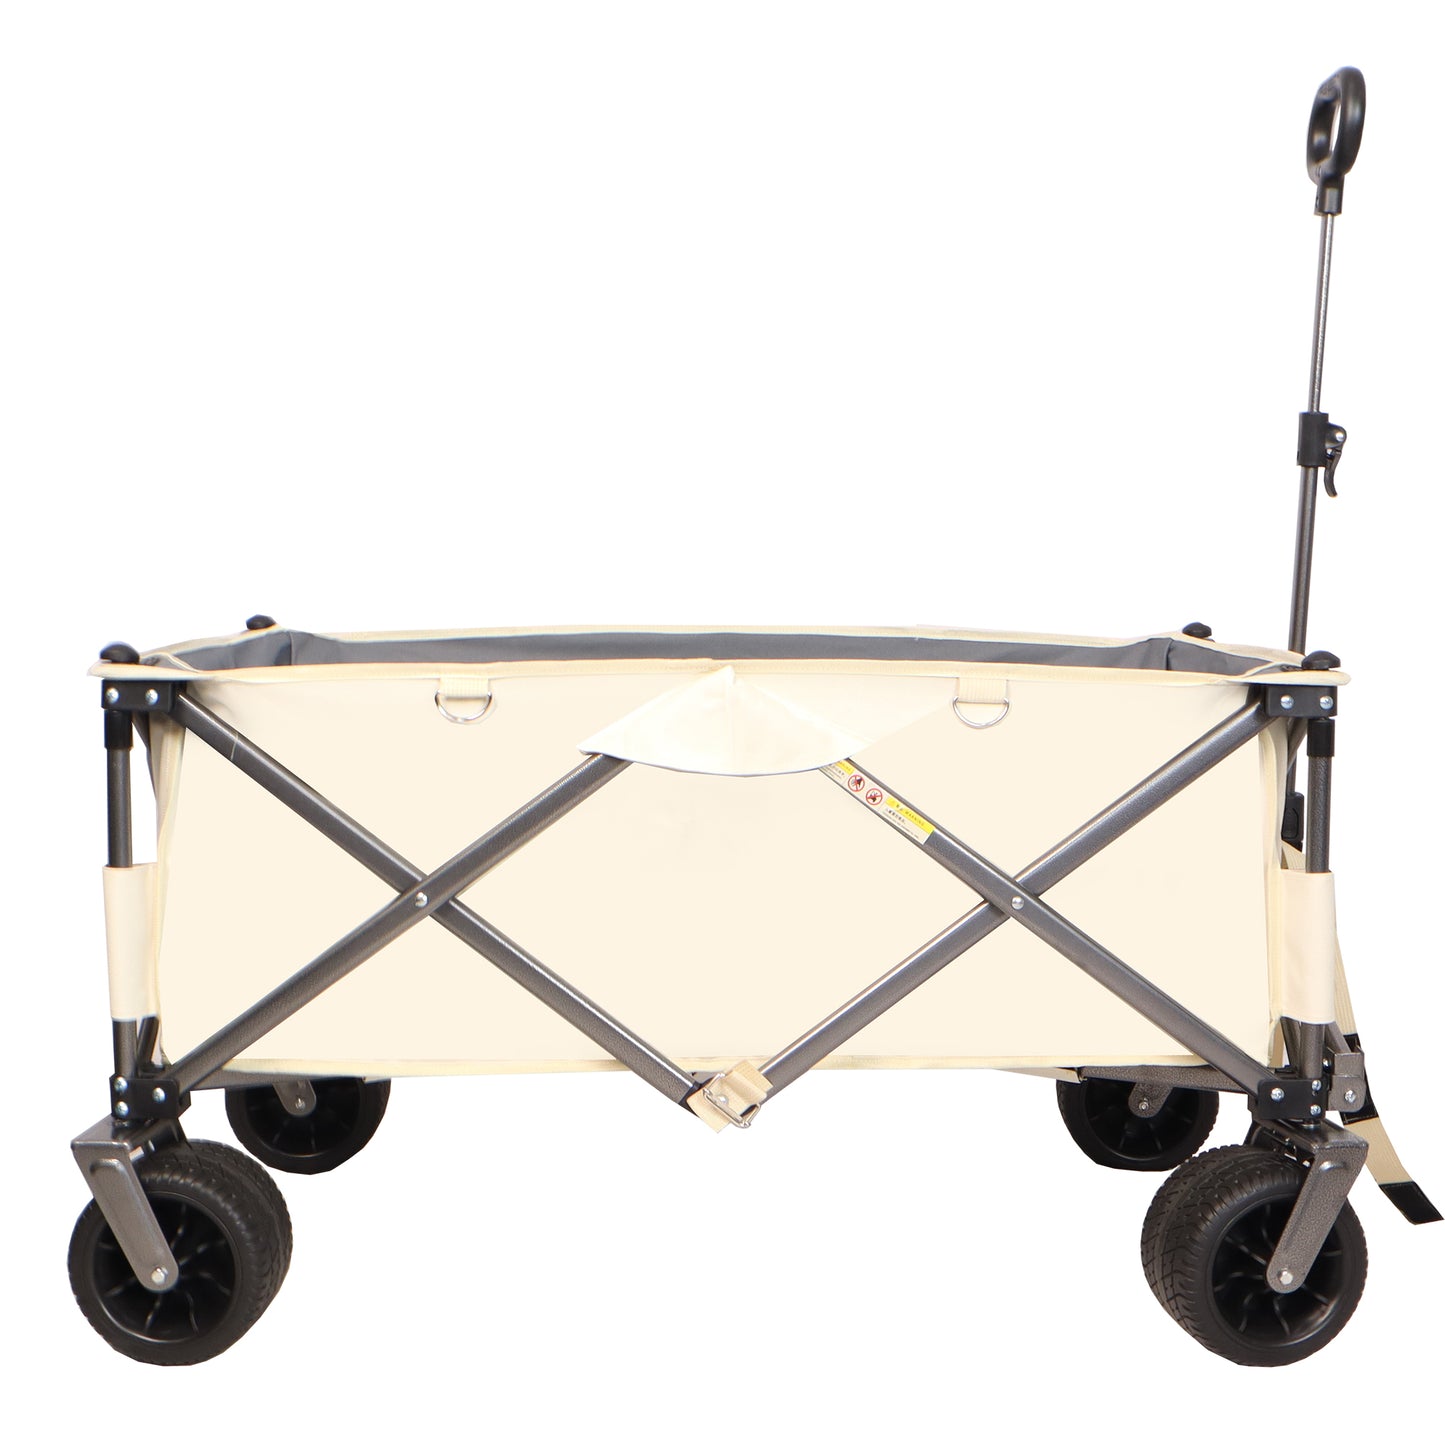 Heavy Duty Utility Beach Wagon Cart for Sand